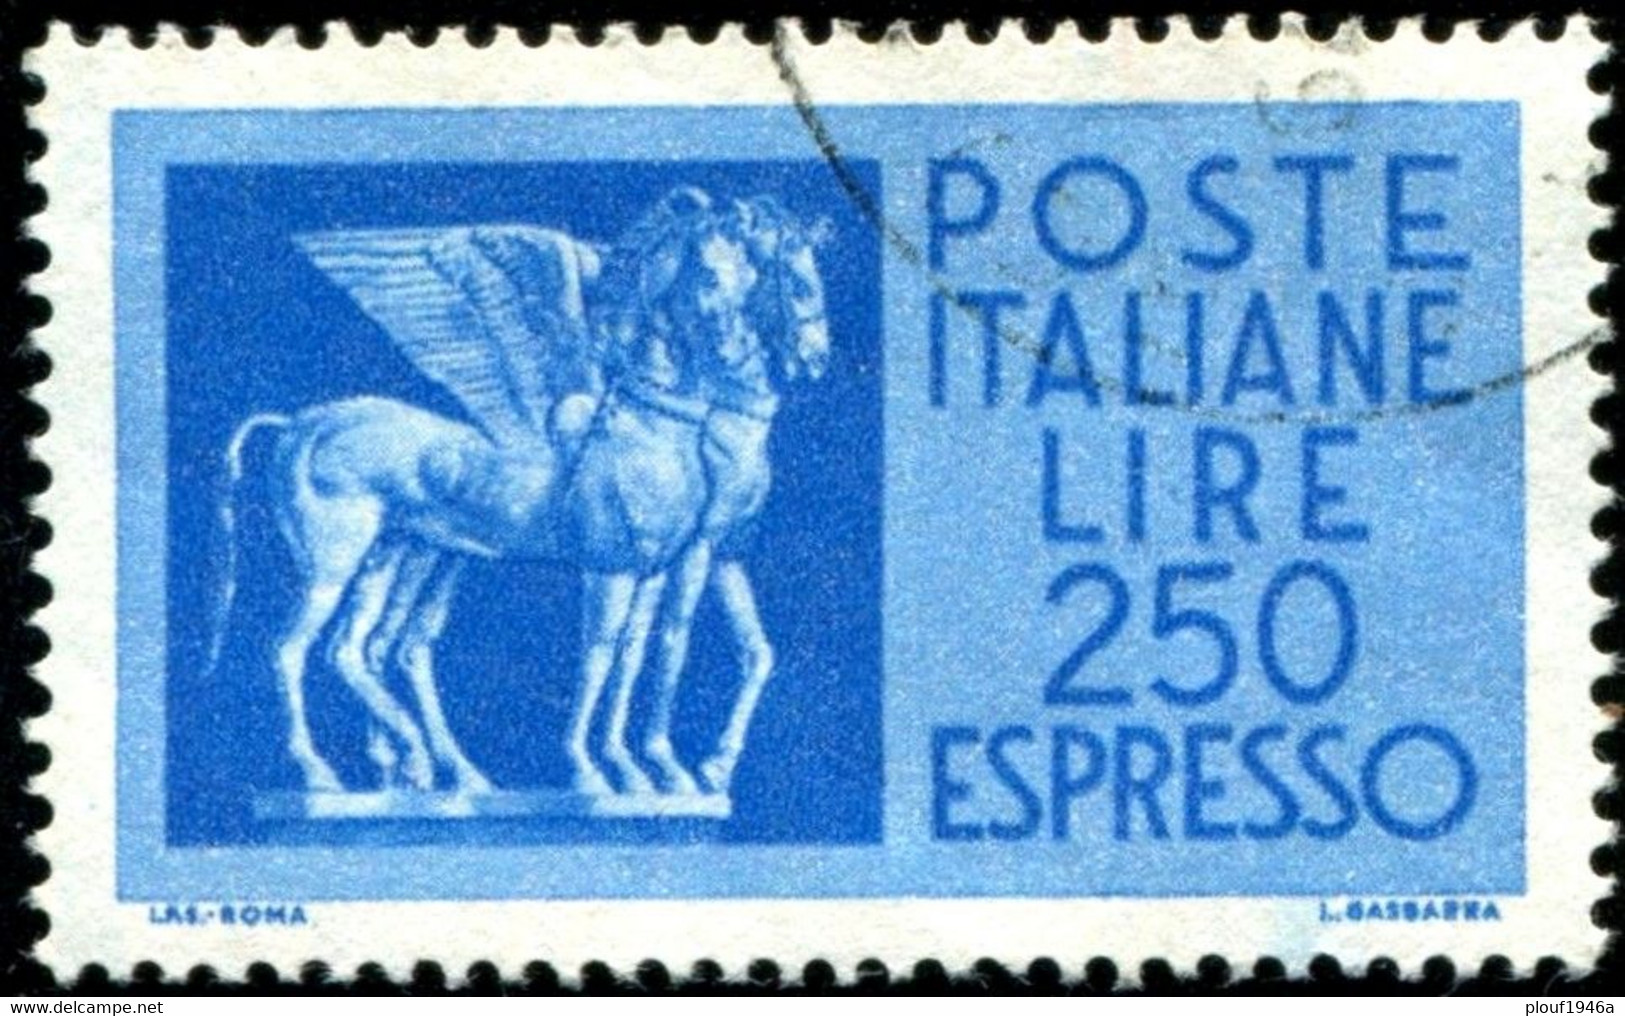 Pays : 247,1 (Italie : République) Yvert Et Tellier N° : Ex   46 (o) - Express/pneumatic Mail